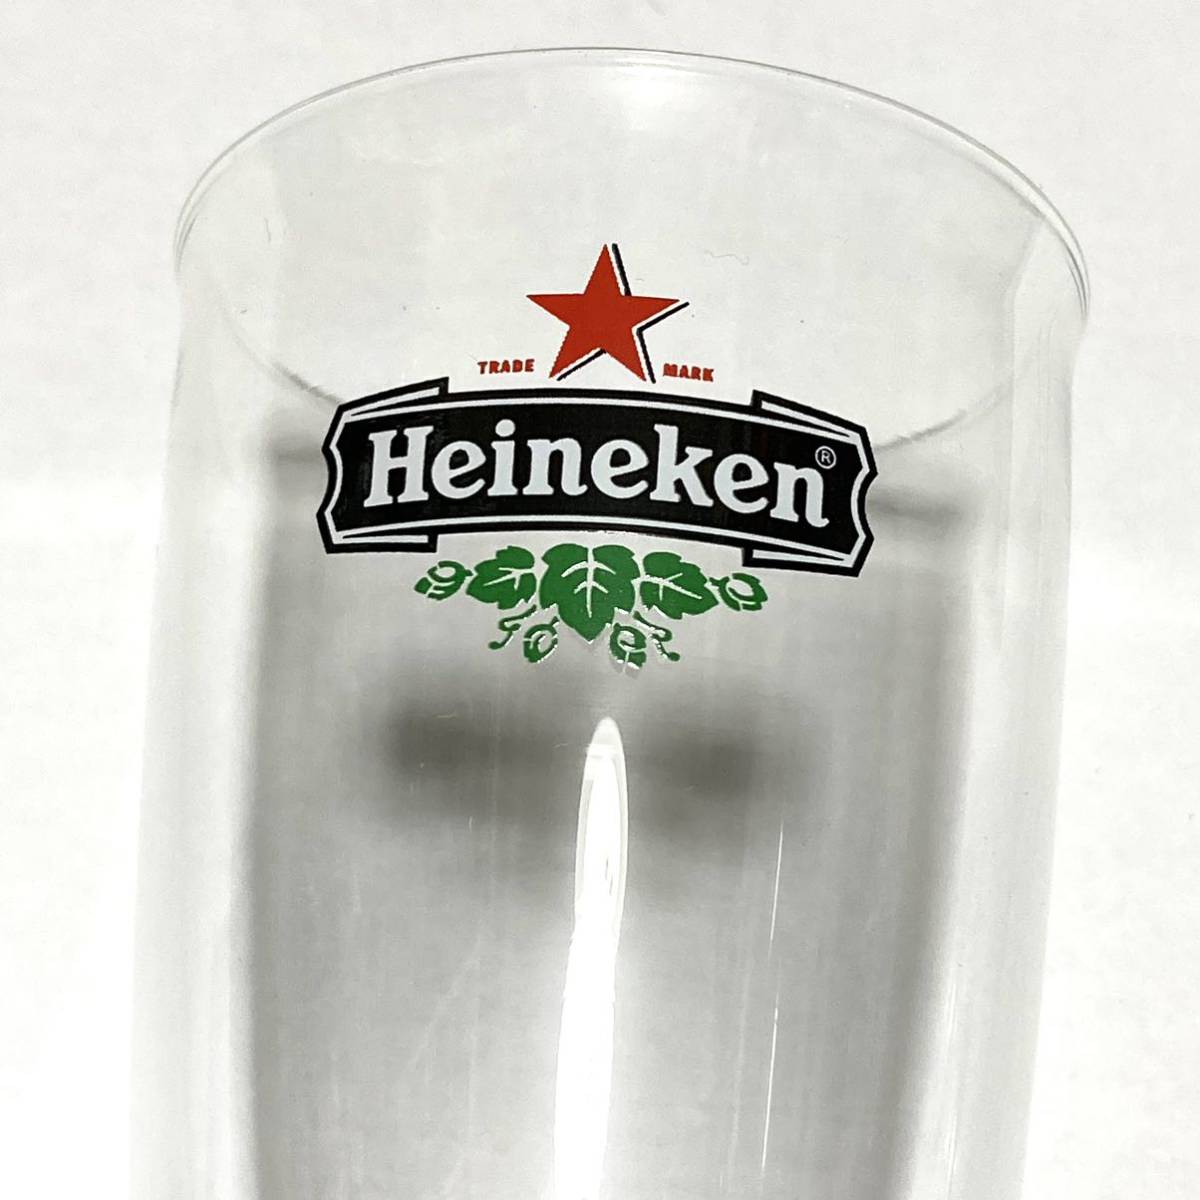 Heineken ハイネケン ビール ノベルティ グラスキャンドル 通販